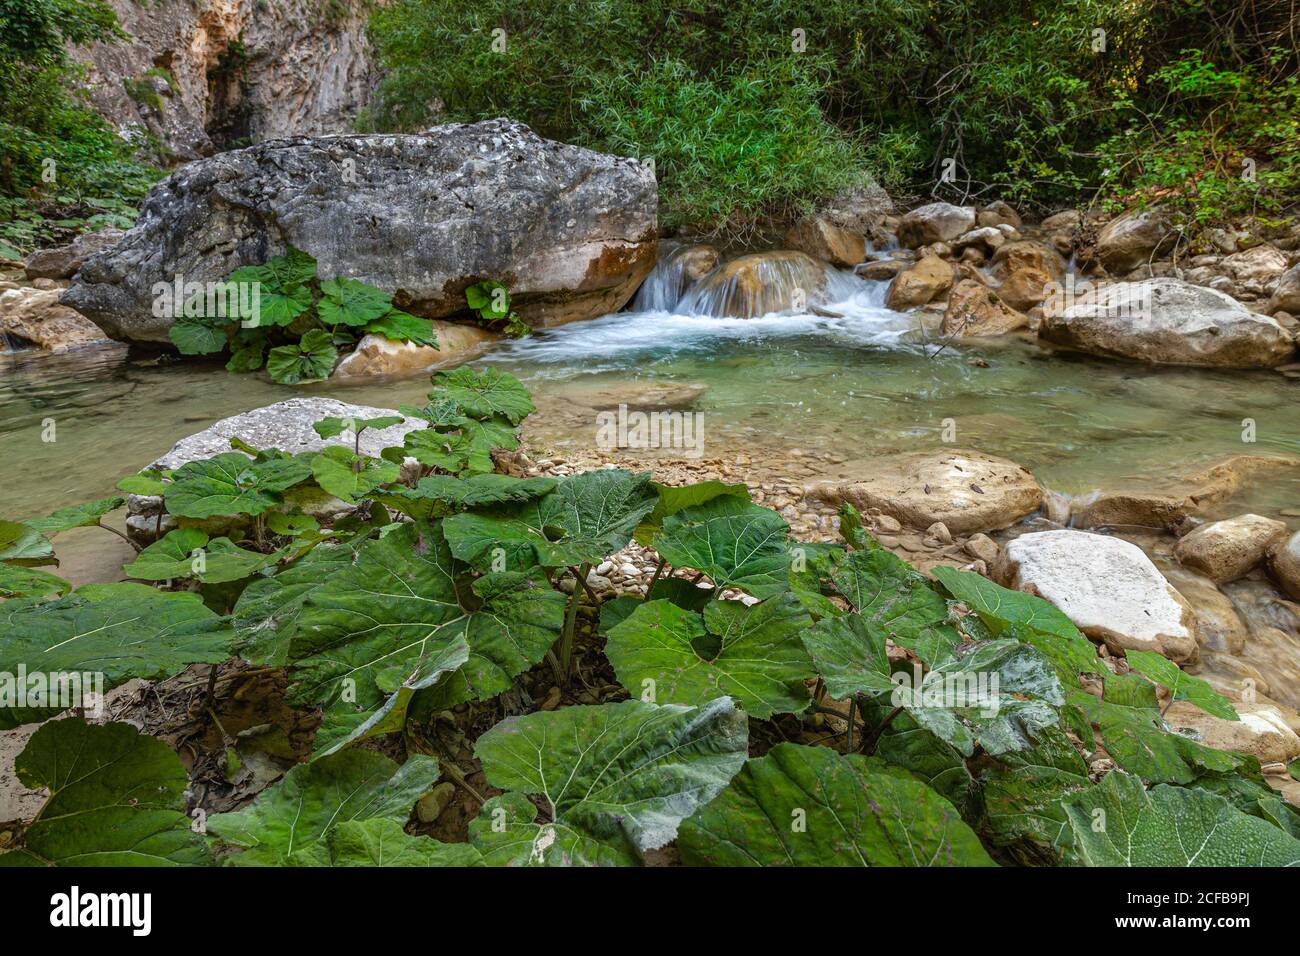 El butterbur, una planta medicinal que crece a lo largo de las orillas del torrente Garrafo. Acquasanta terme, Marche, Italia, Europa Foto de stock